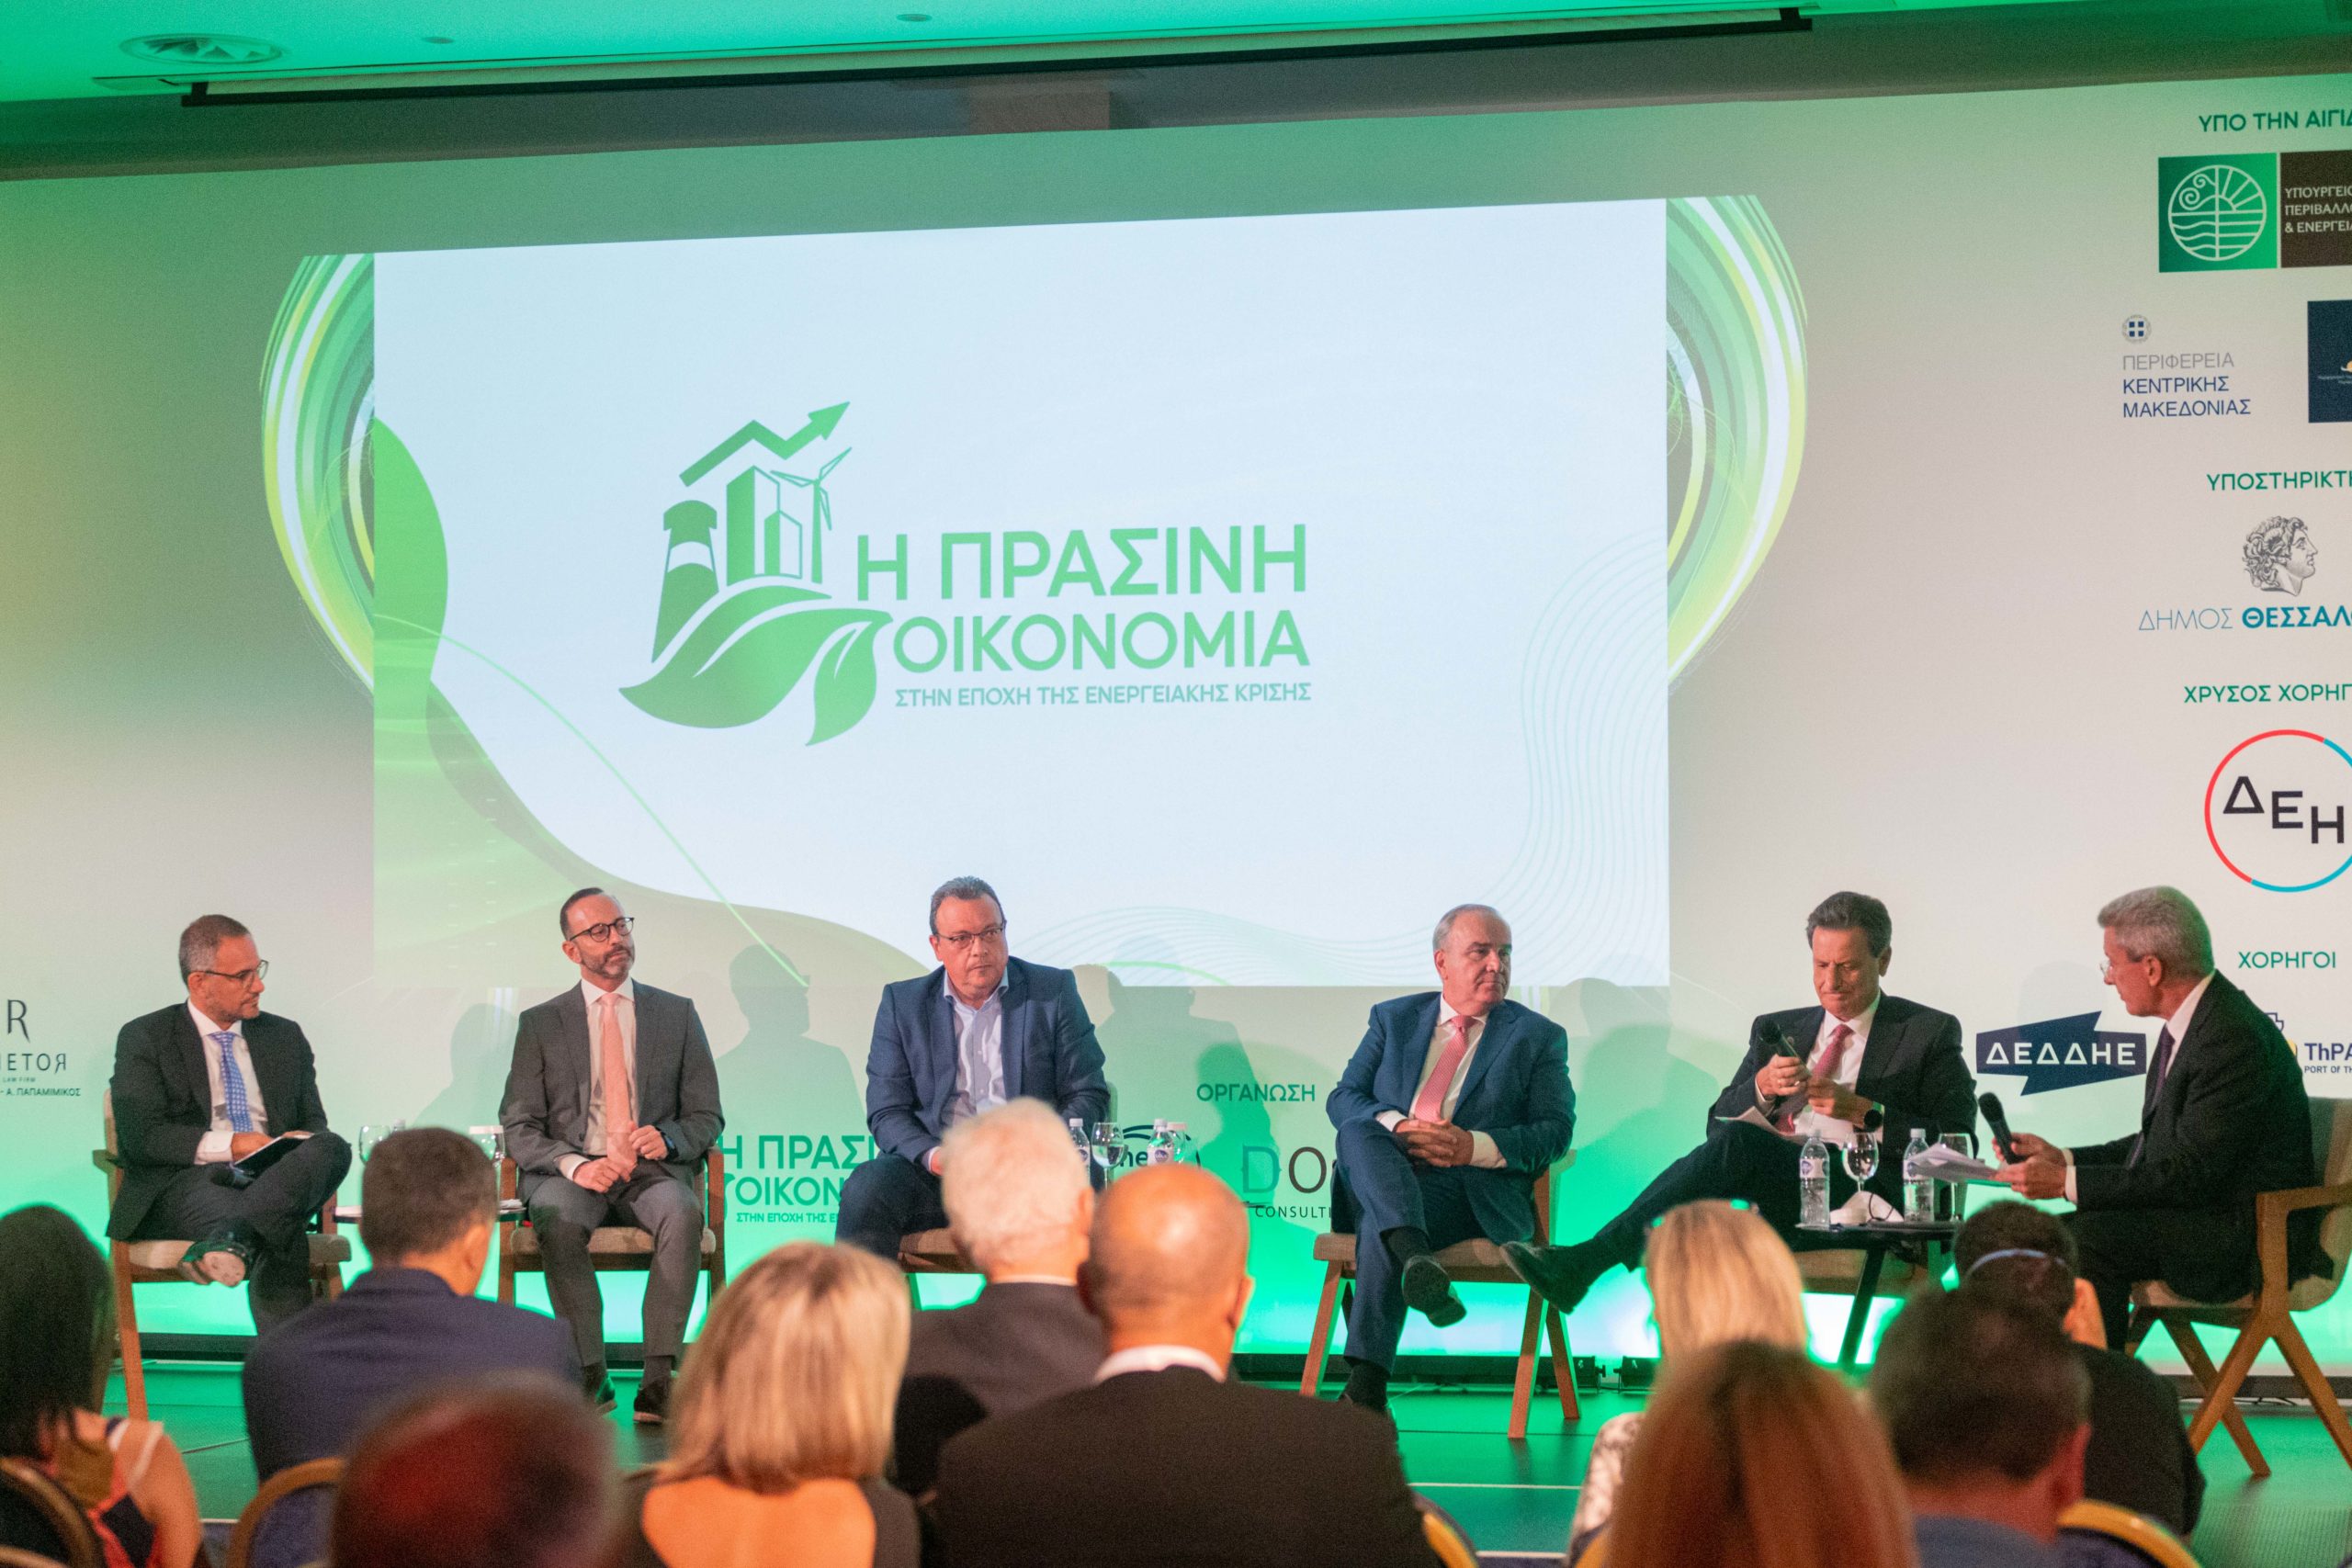 συνέδριο «Η Πράσινη Οικονομία στην Εποχή της Ενεργειακής Κρίσης»